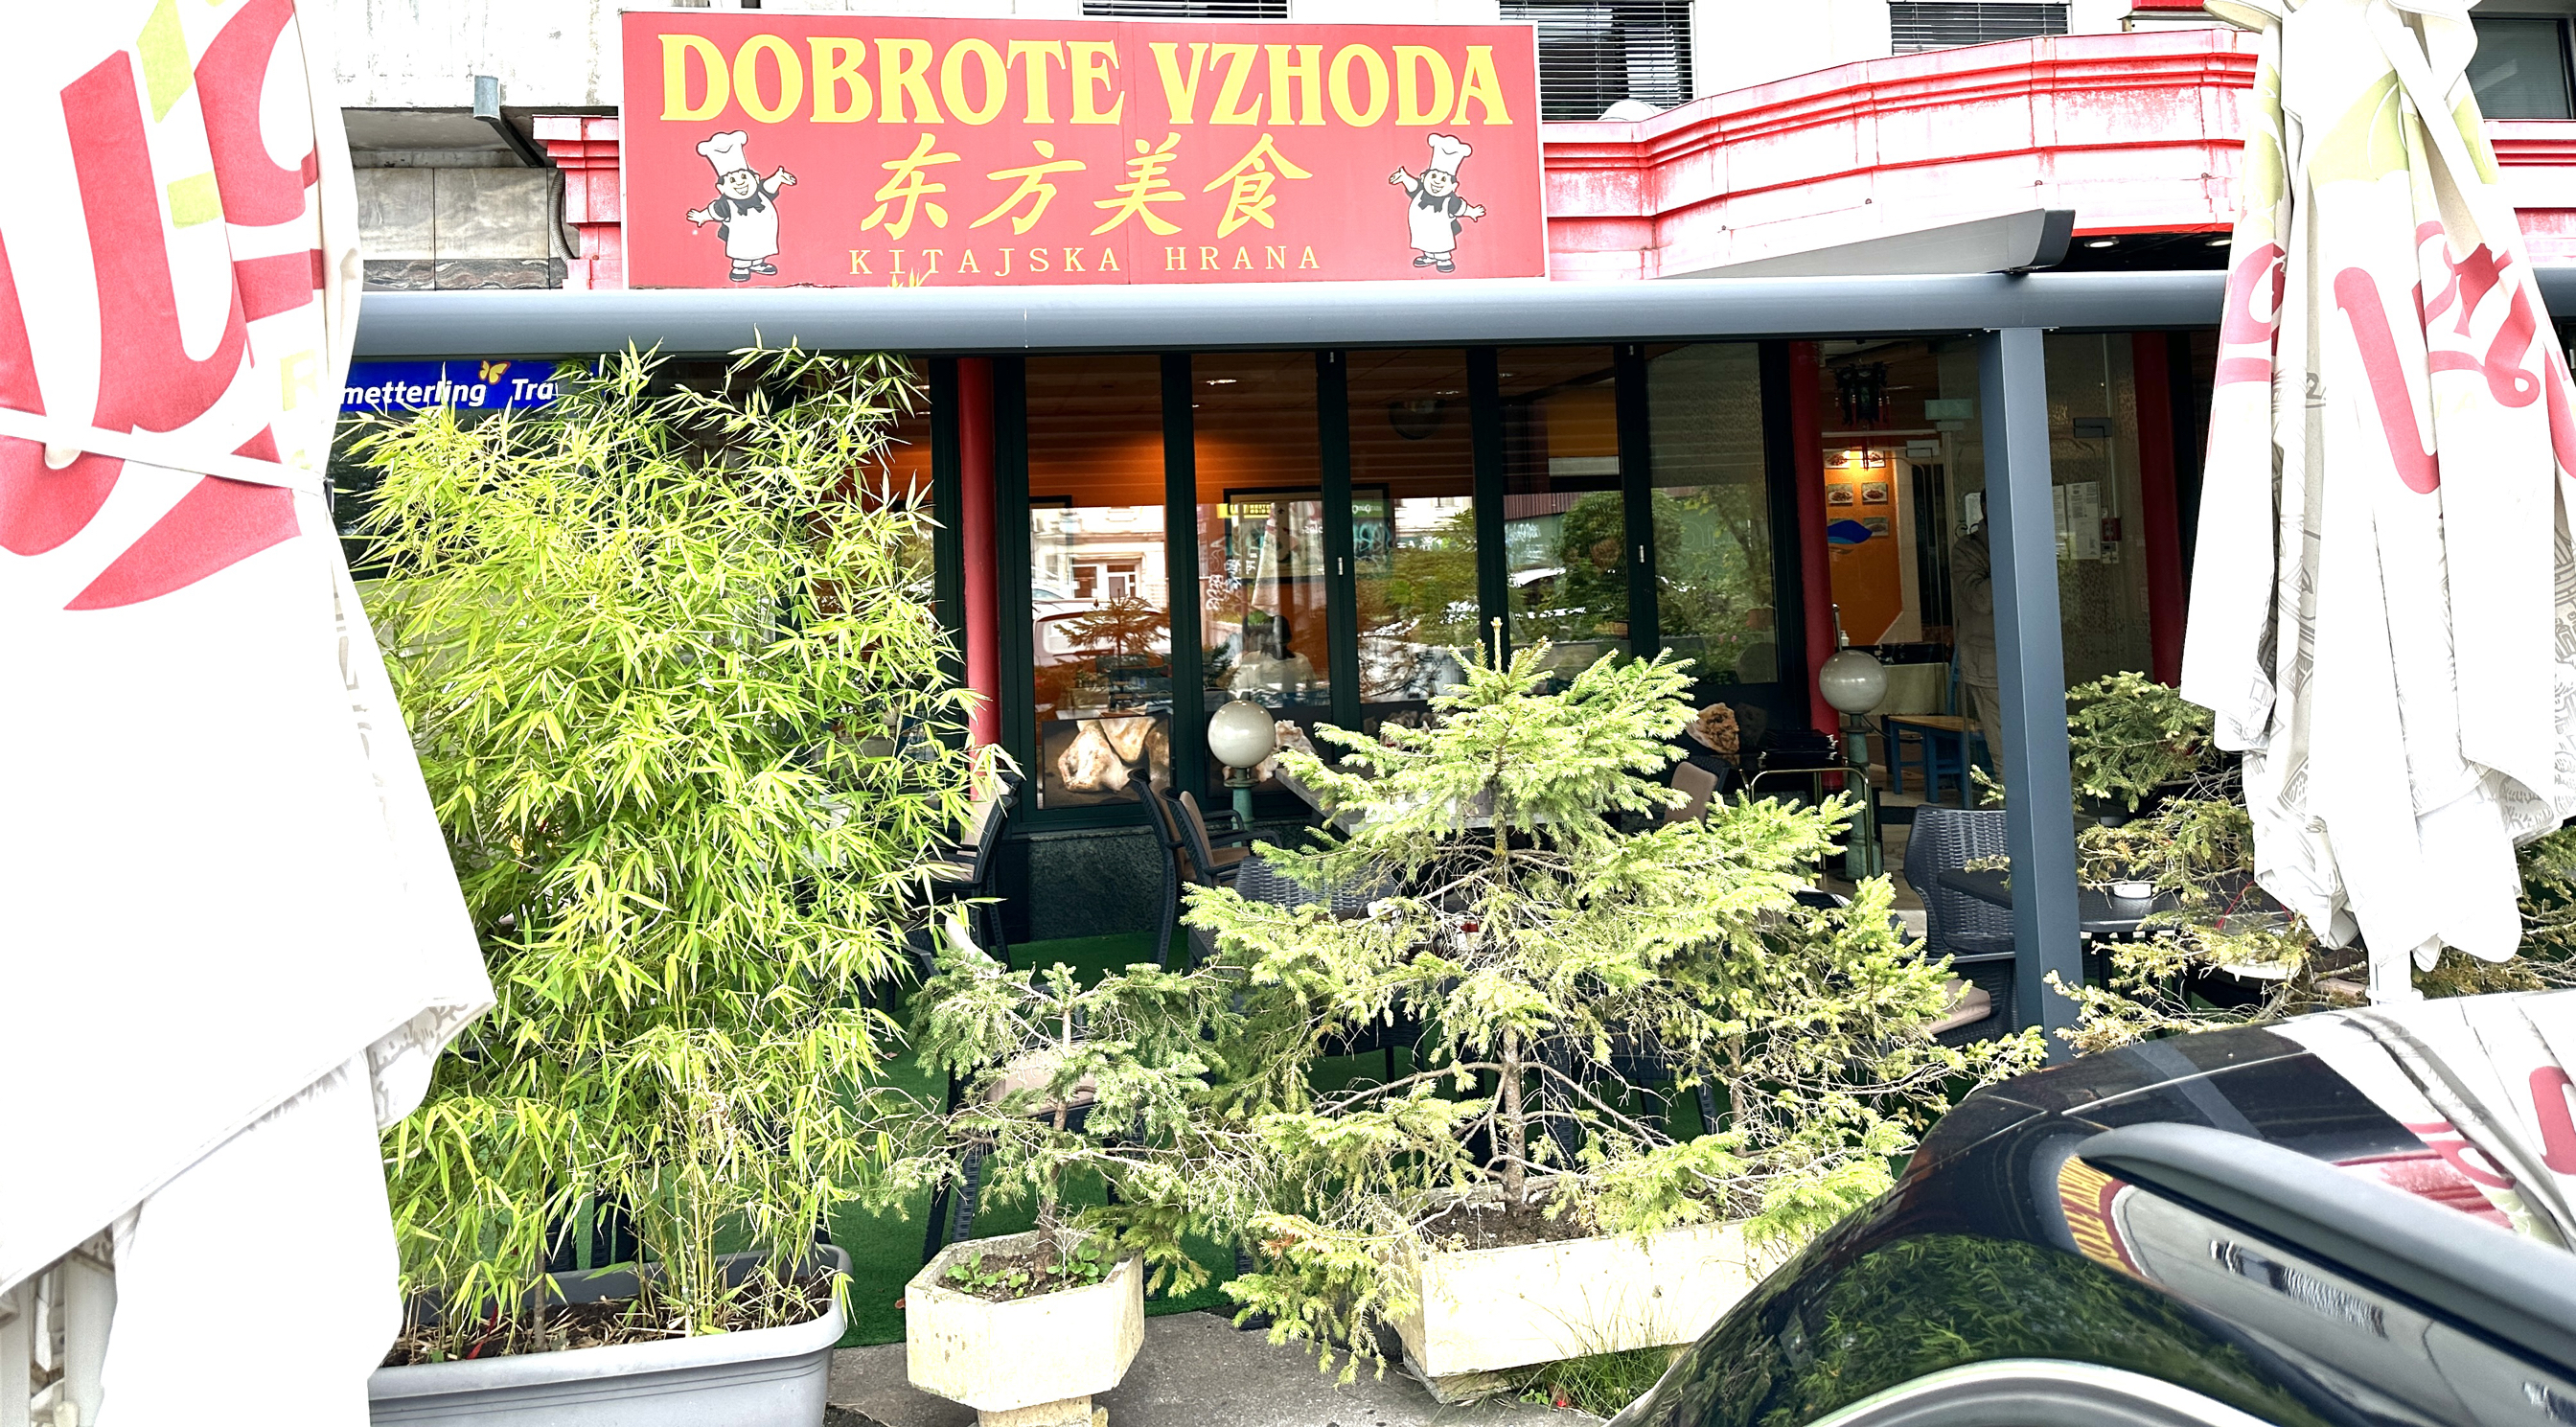 在斯洛文尼亚首都卢布尔雅那，选择中国美食一定首选东方美食。饭菜做的好吃实惠，态度和蔼可亲！老板两囗子